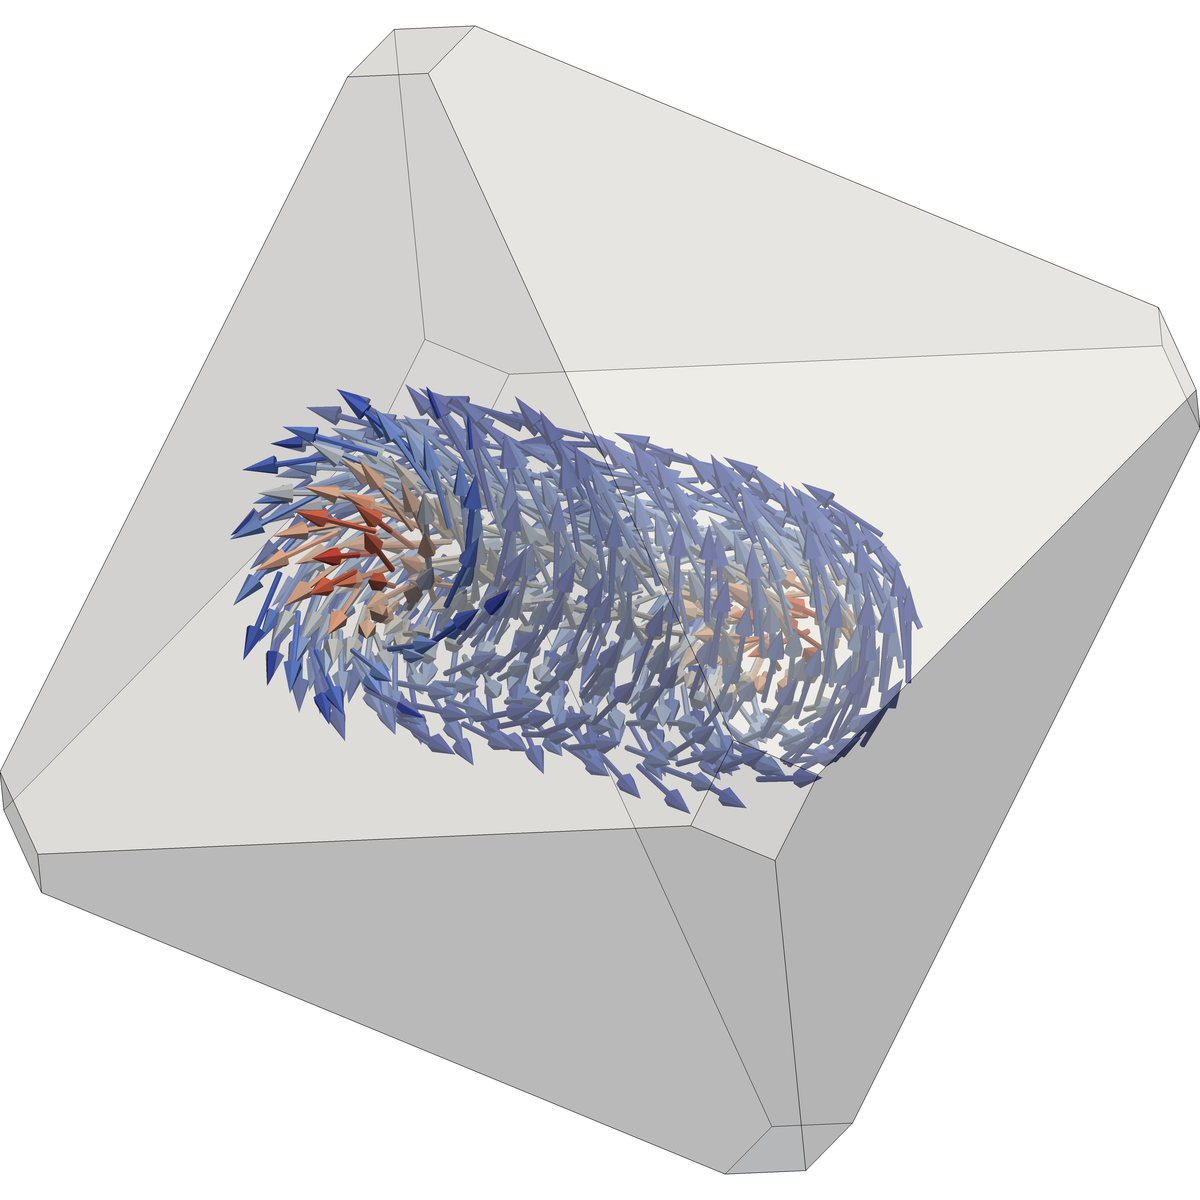 Wirbelstruktur des Magnetit-Nanokristalls